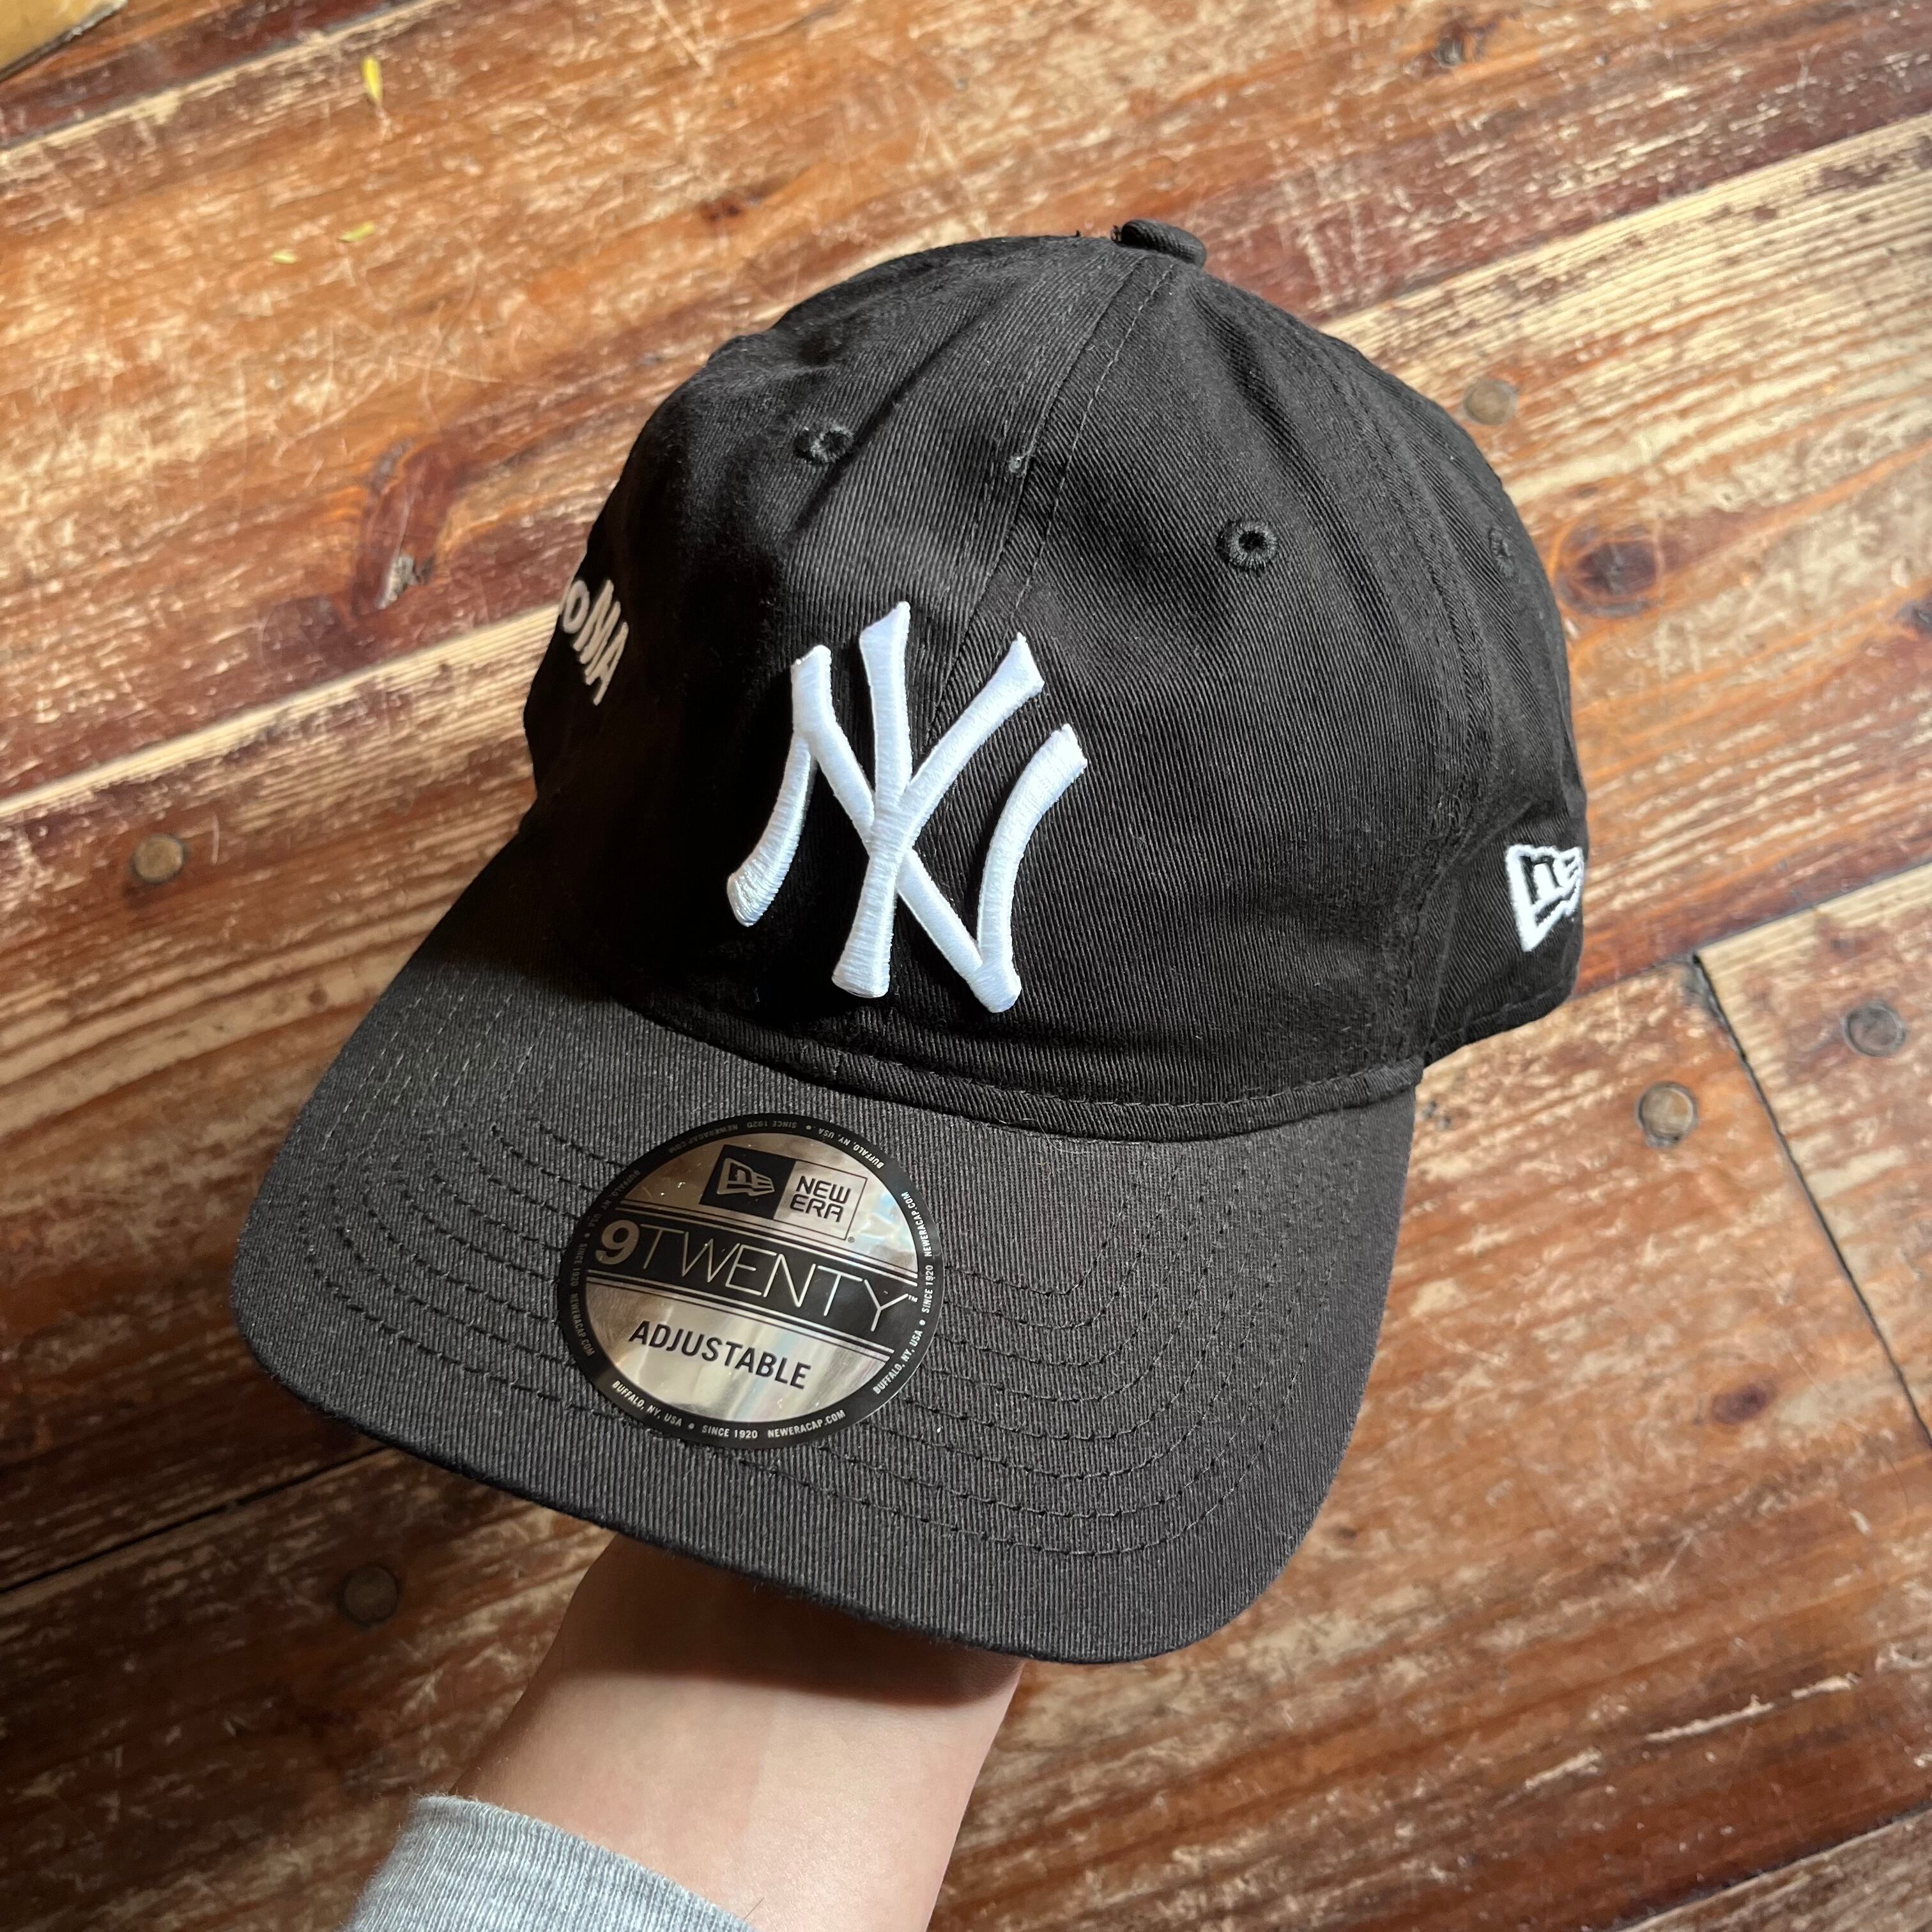 MOMA x New Era ”NY Yankees” ”NY Mets” Baseball Cap | Rei-mart powered by  BASE